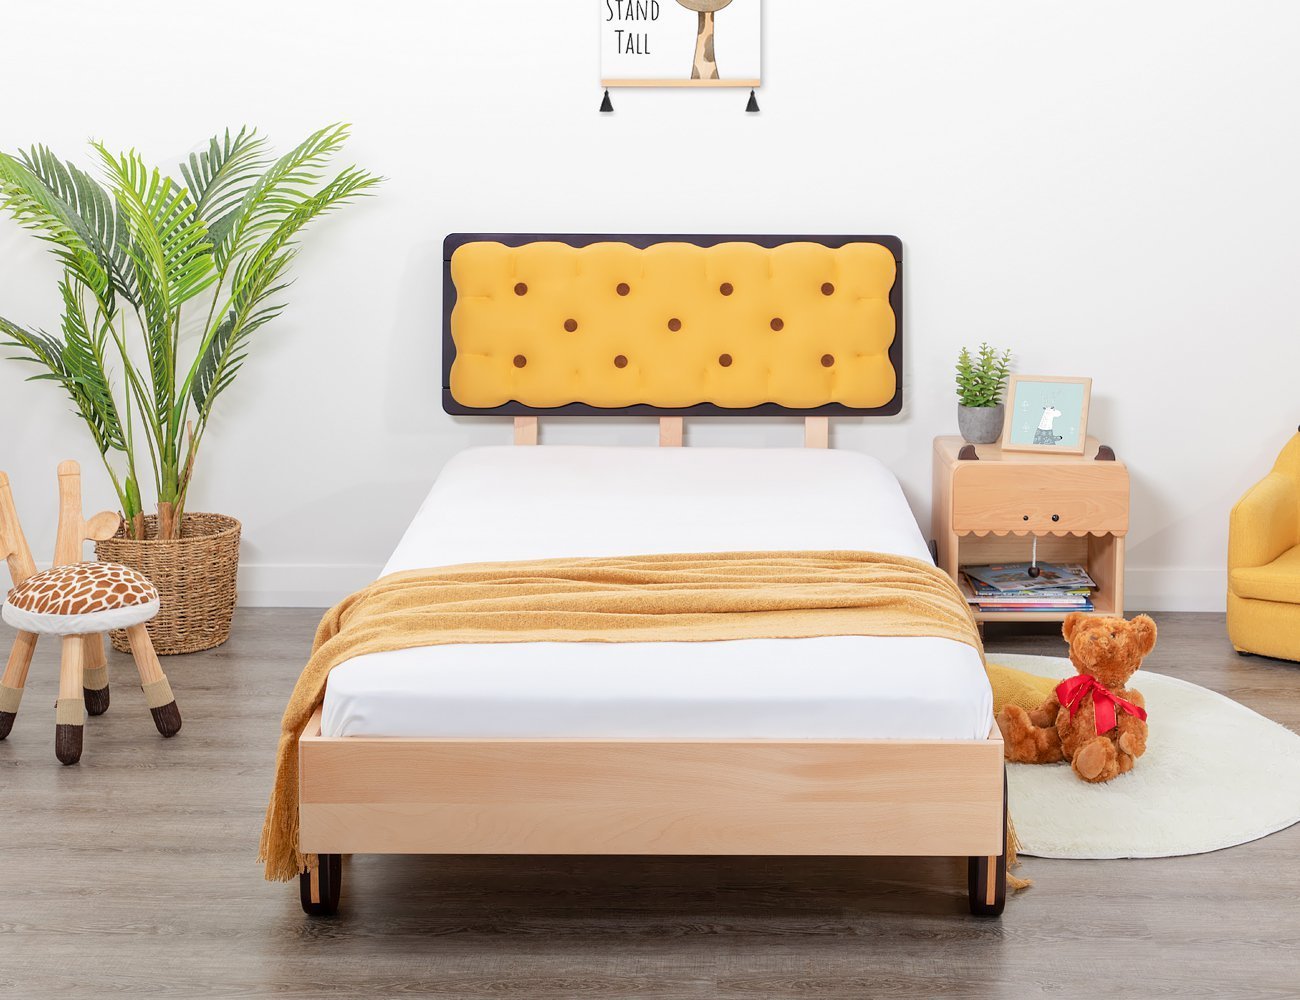 Biscuit - King Single Bed Frame + Mattress Set @ Crazy Sales - We have